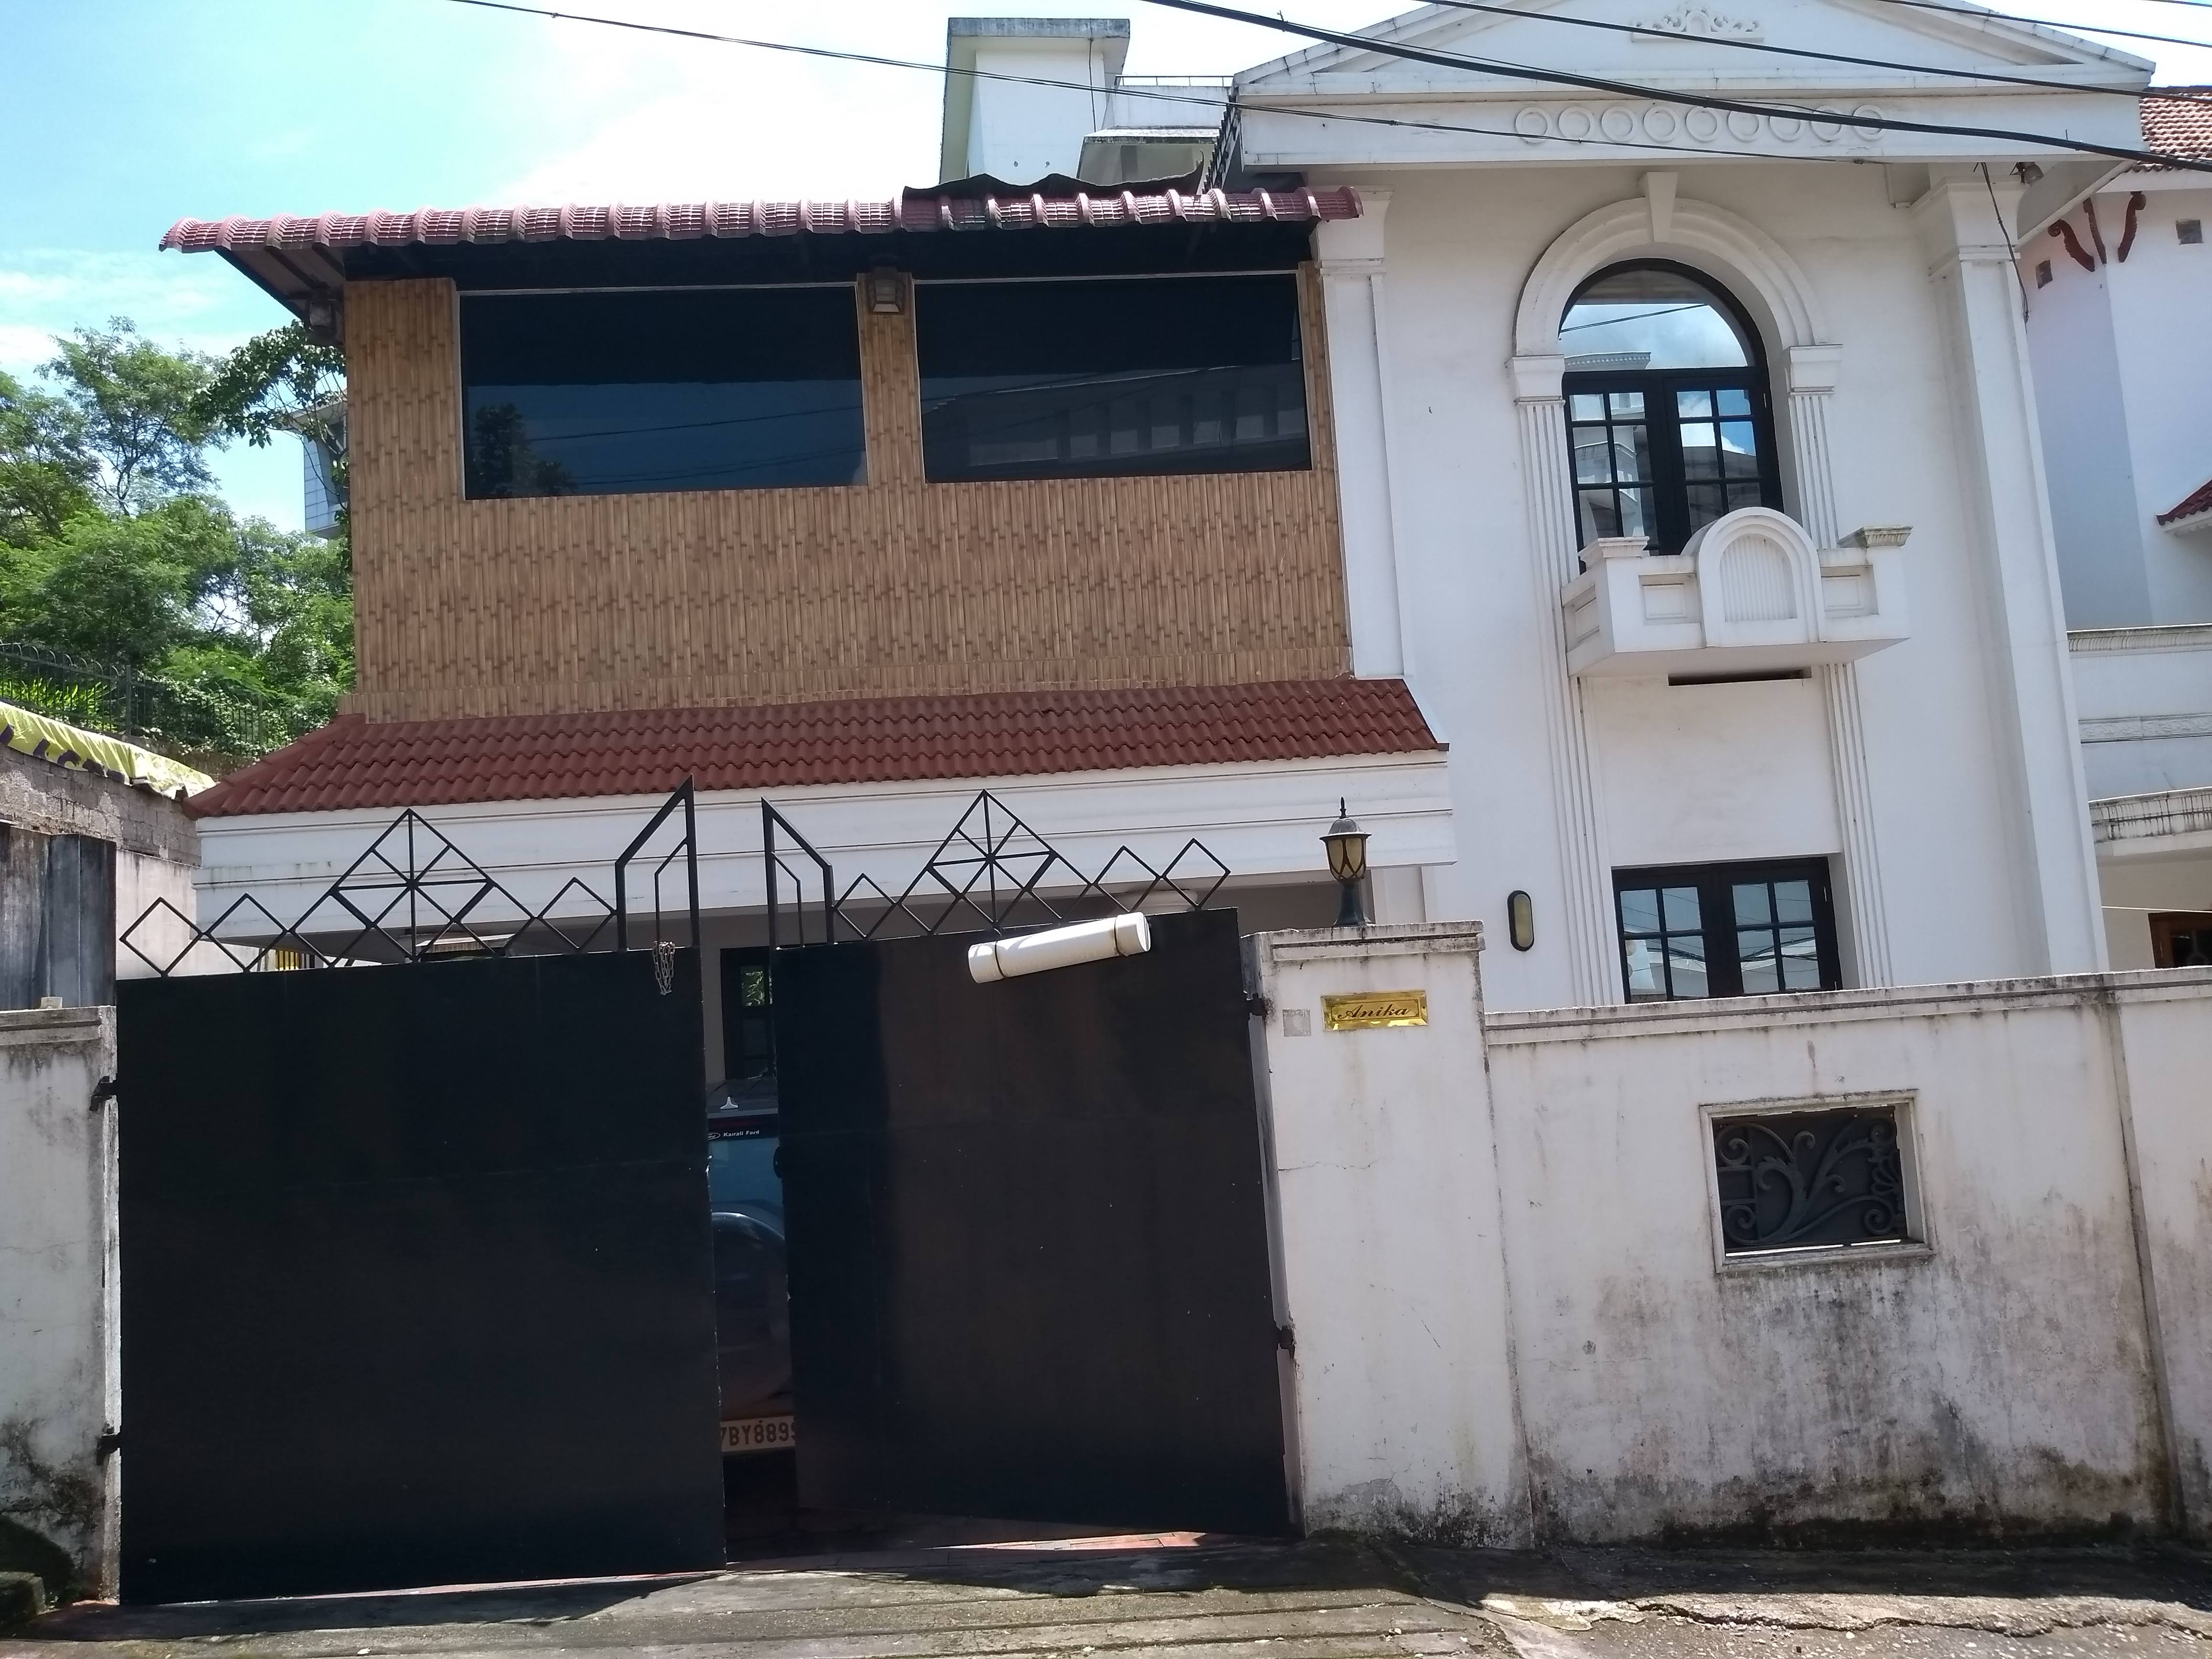 House for sale for Rs. 1.1 Crore Near Kakkanad Metro Station, Kochi